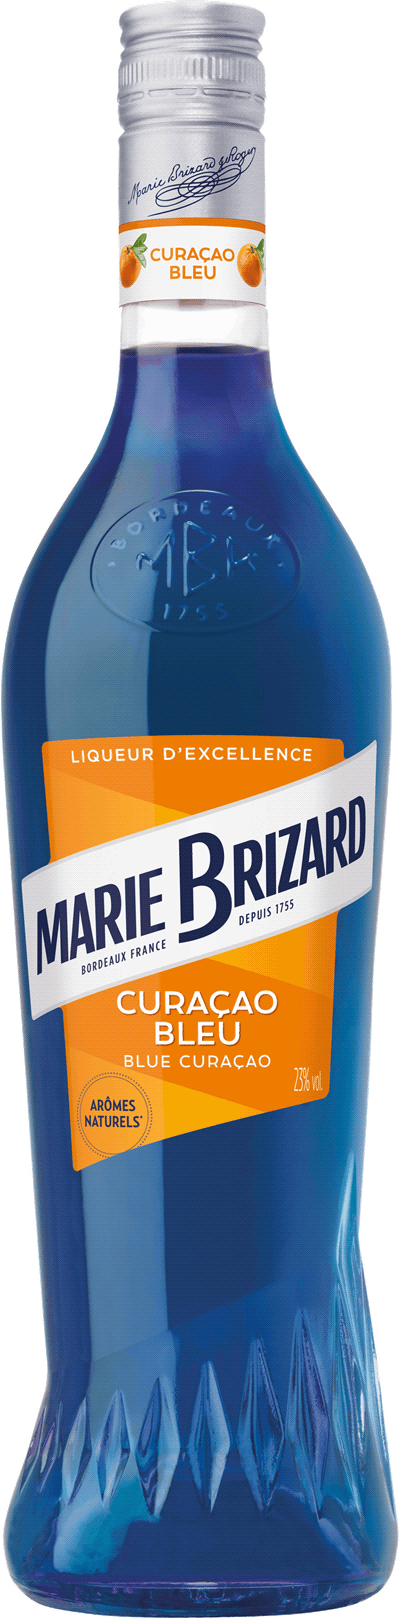 Marie Brizard d'Exellence Blue Curacao